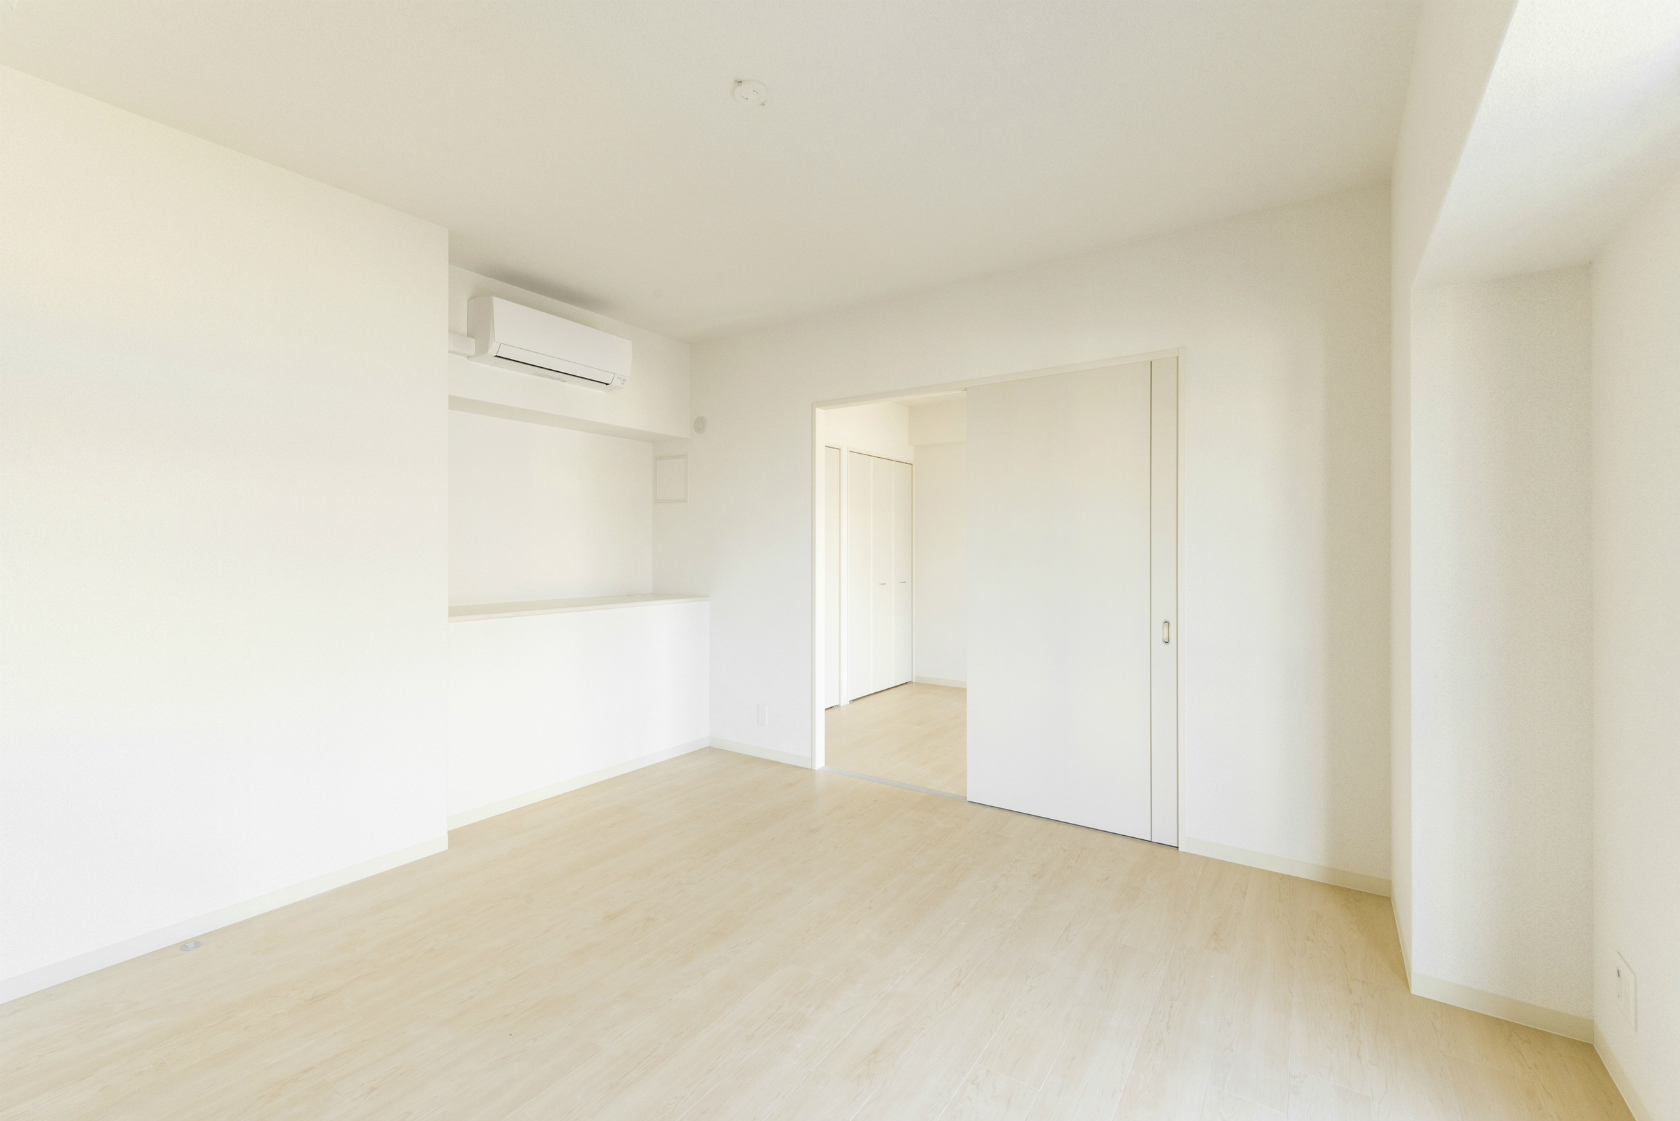 名古屋市中川区の賃貸マンションの白で統一された洋室